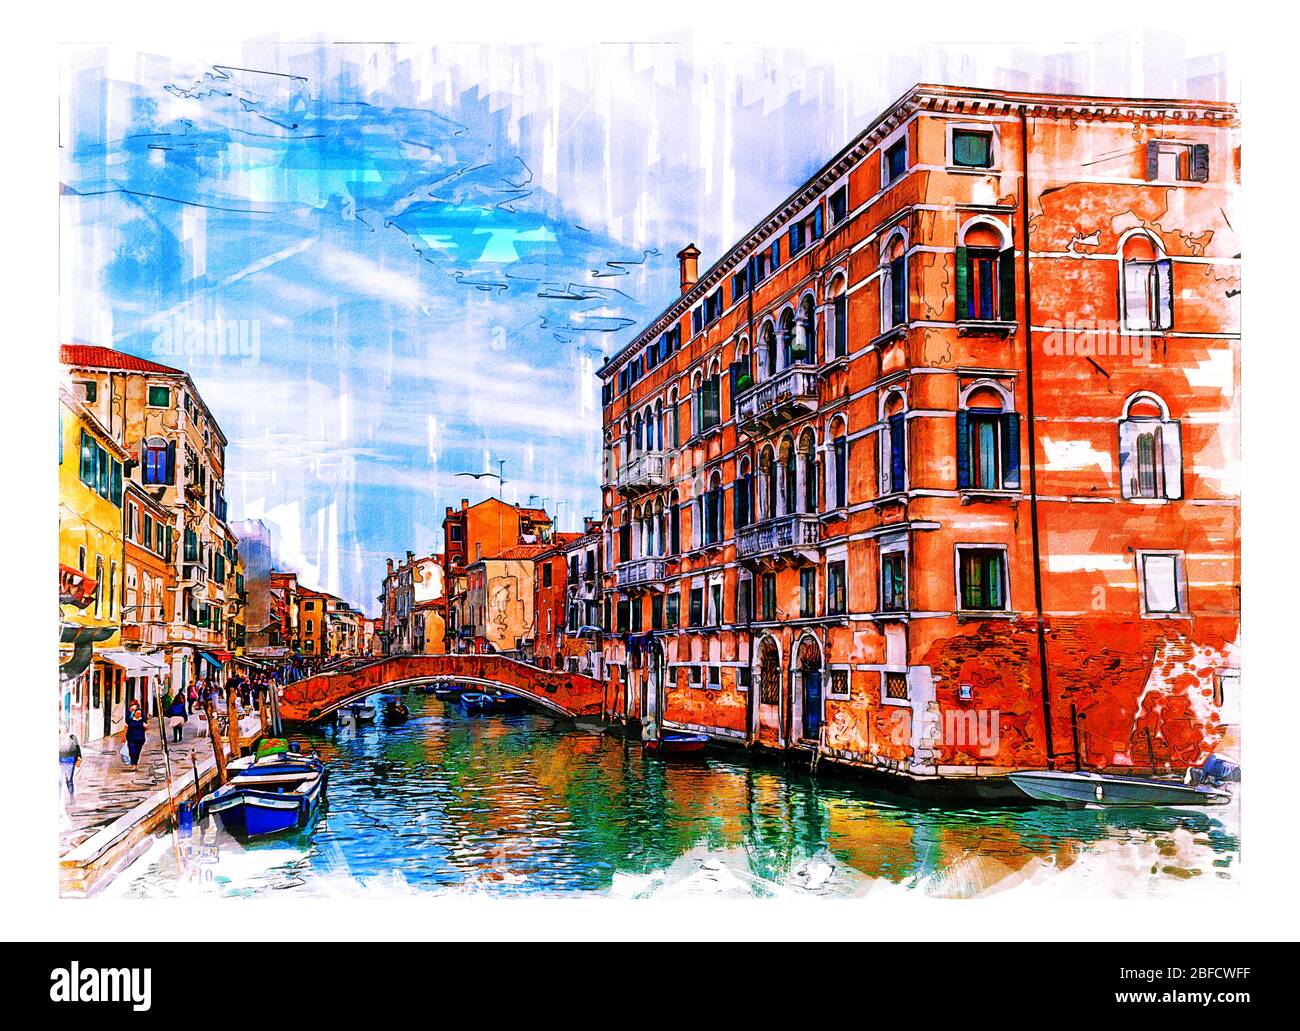 Fondeenta dei Ormesini, Venise, Italie. Crayon de couleur et illustration du style d'esquisse aquarelle. Banque D'Images